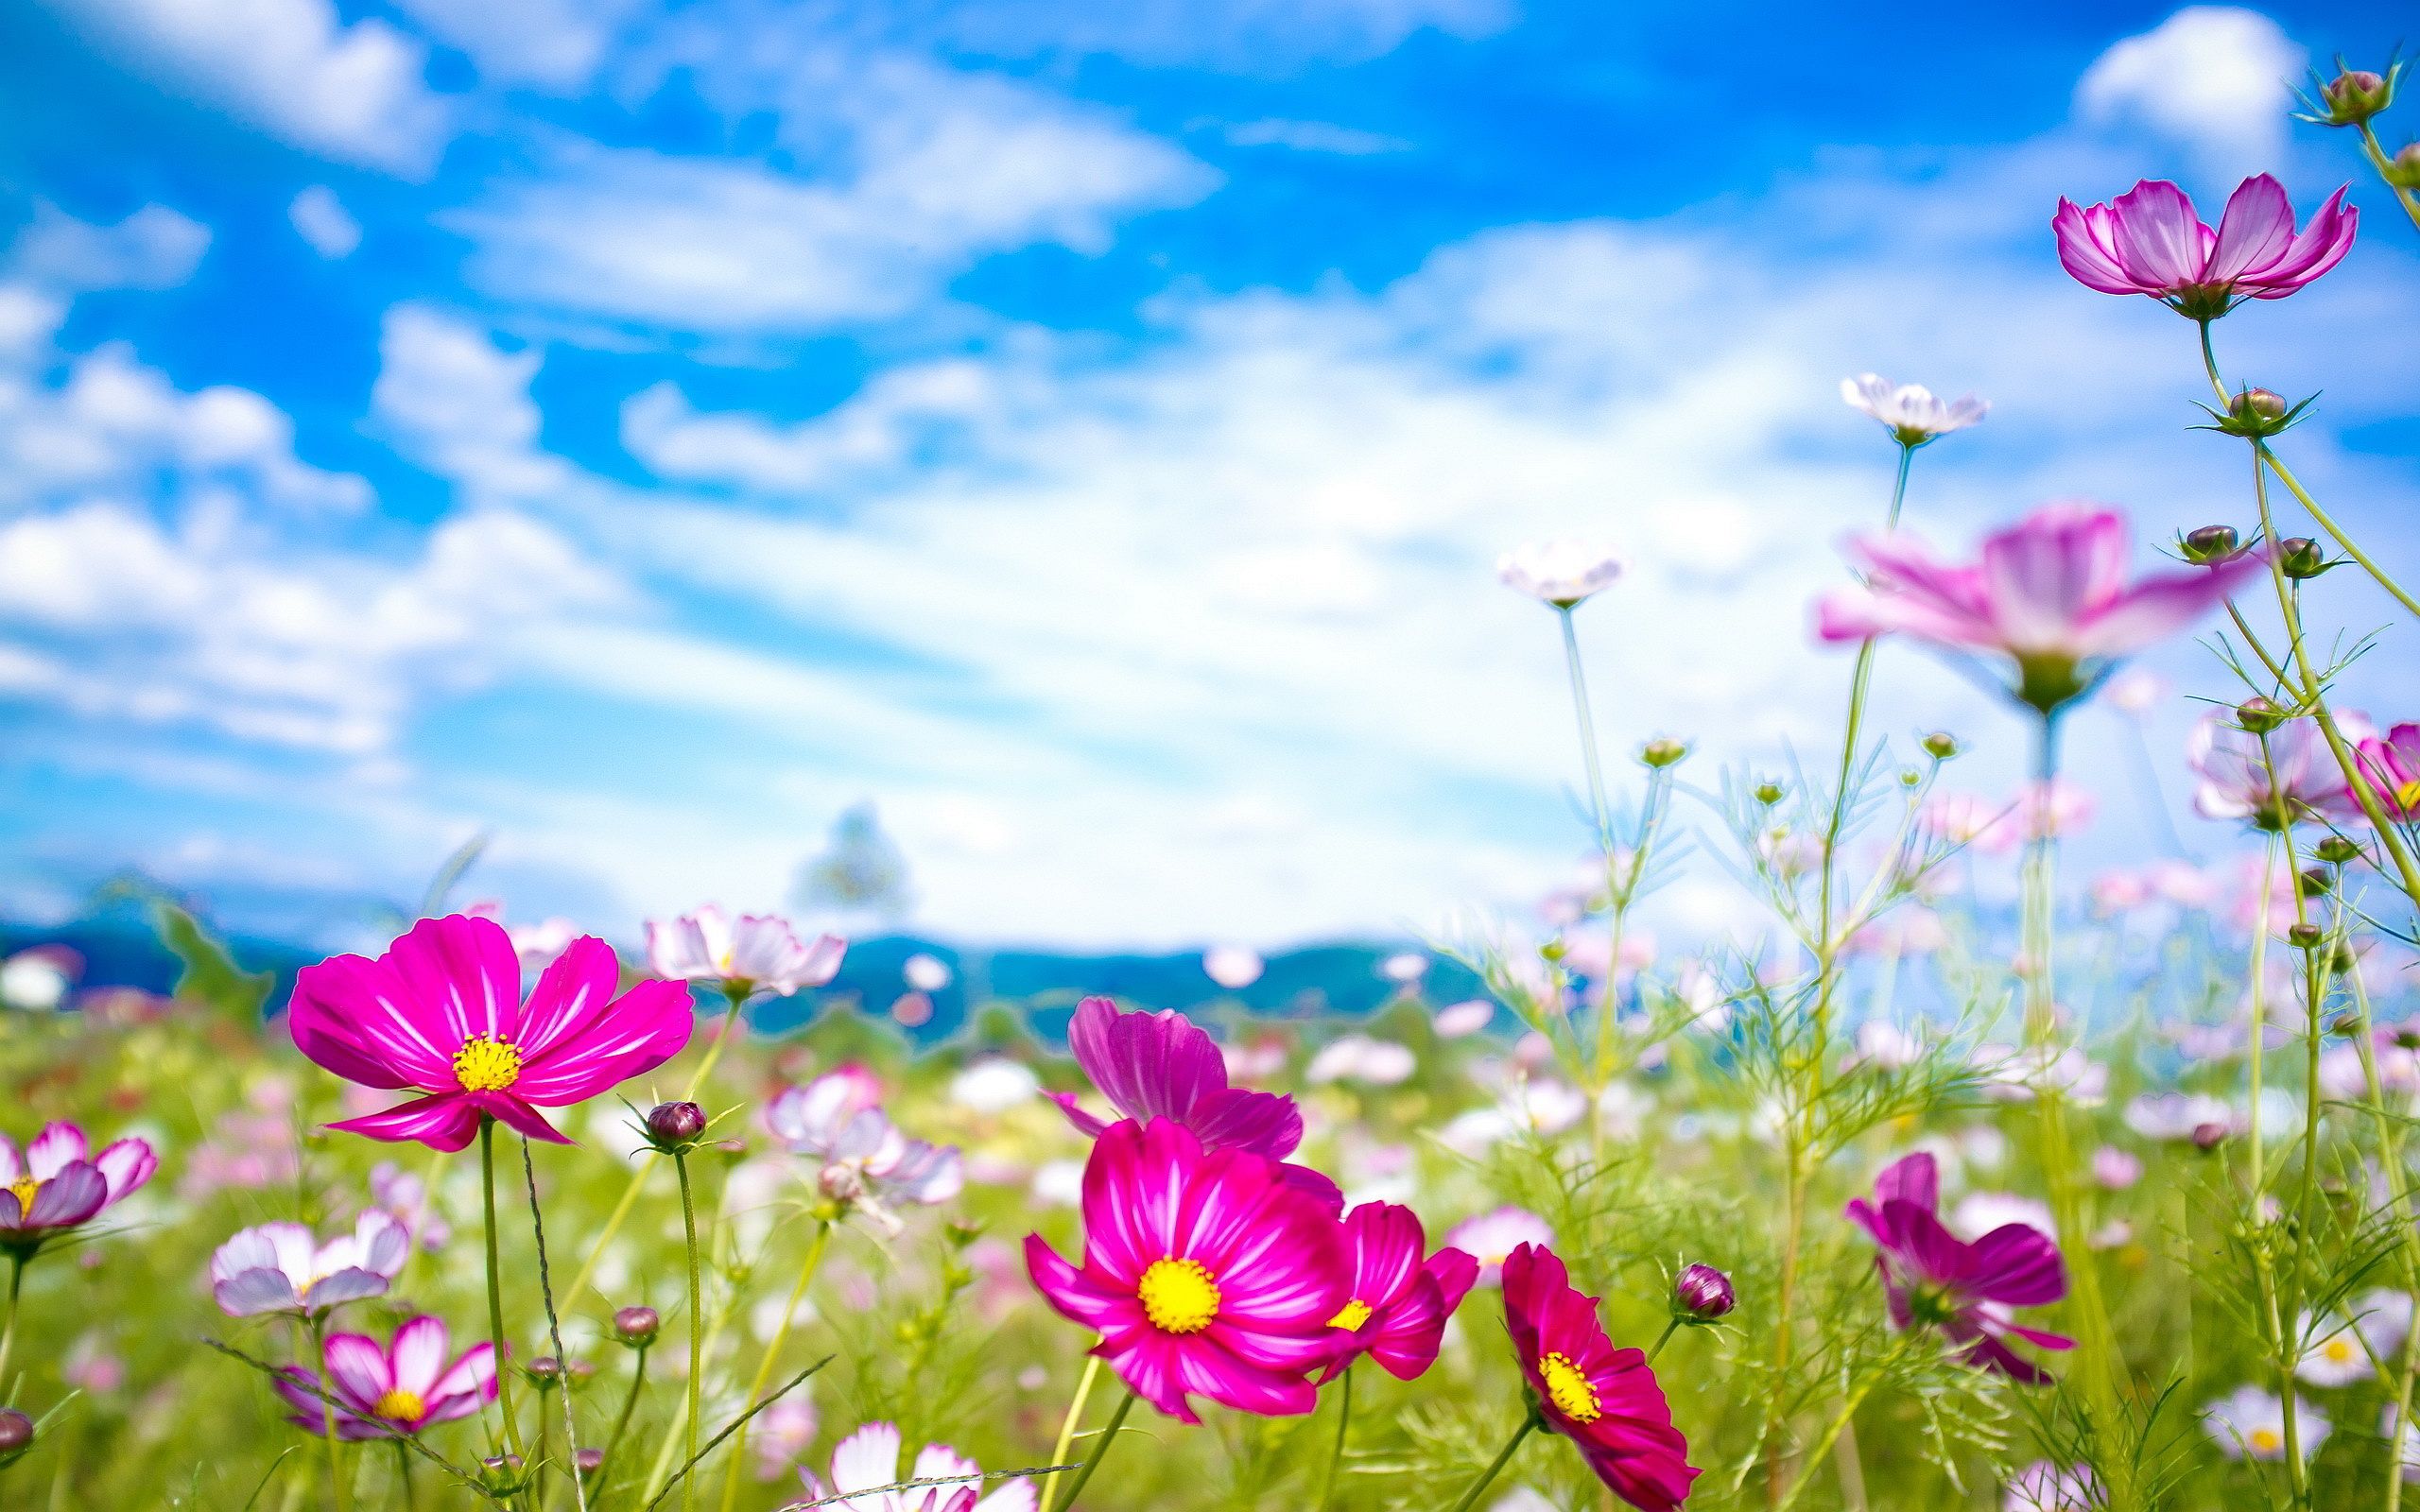 پوستر گل های خوش رنگ و لعاب صورتی در دشت تابستانی با کیفیت بالا و رایگان